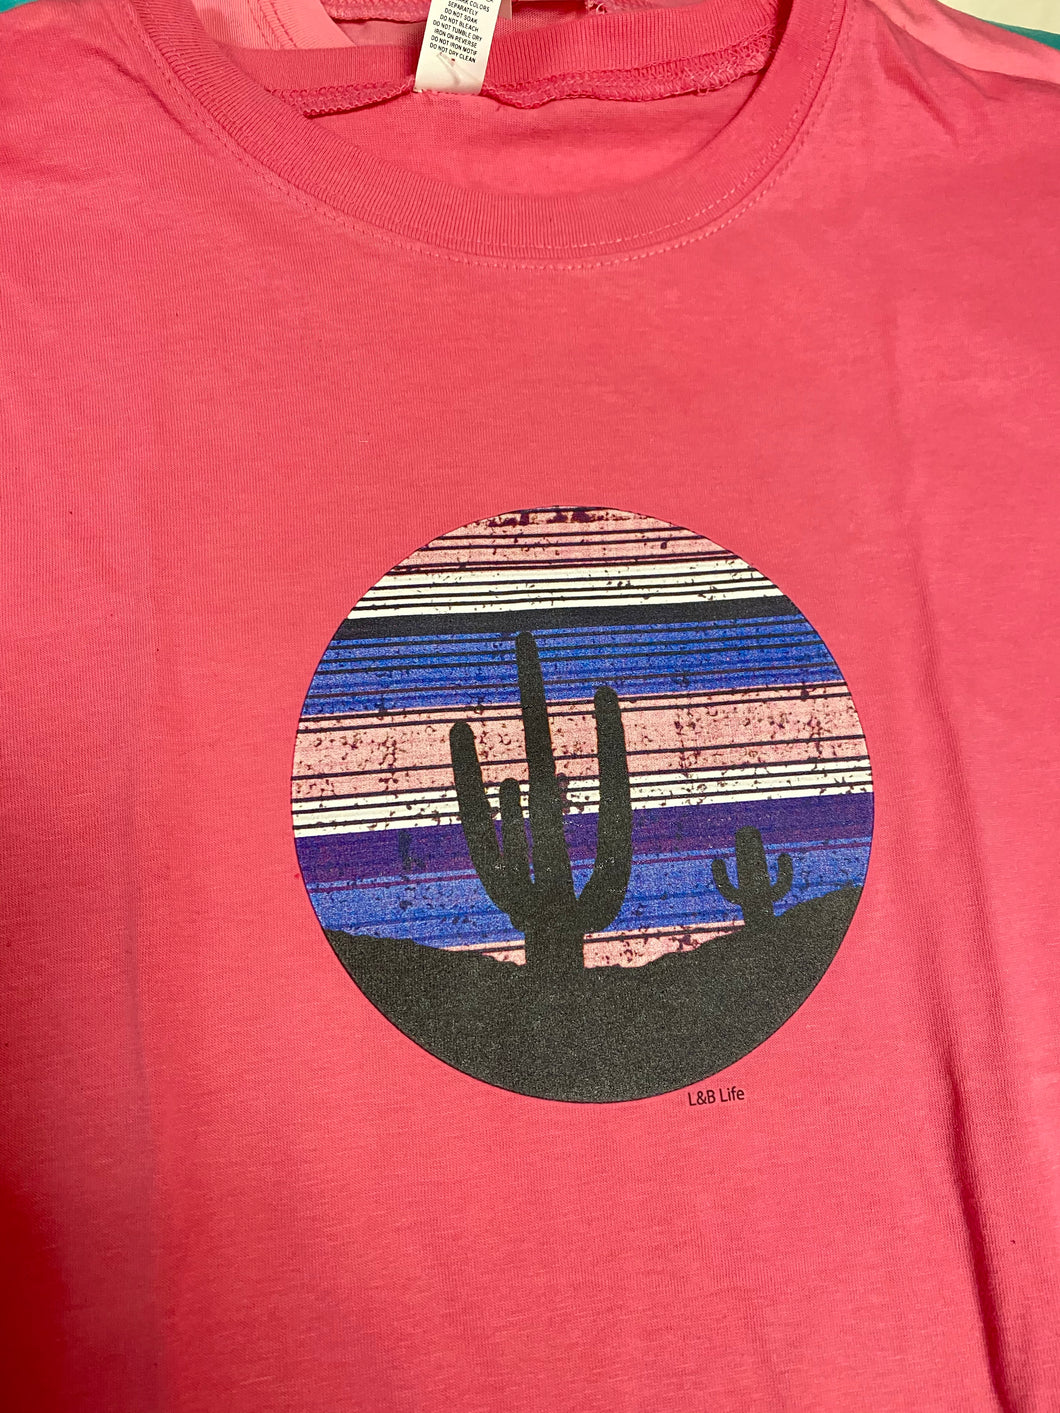 Cactus Sunset Girls Graphic Tee